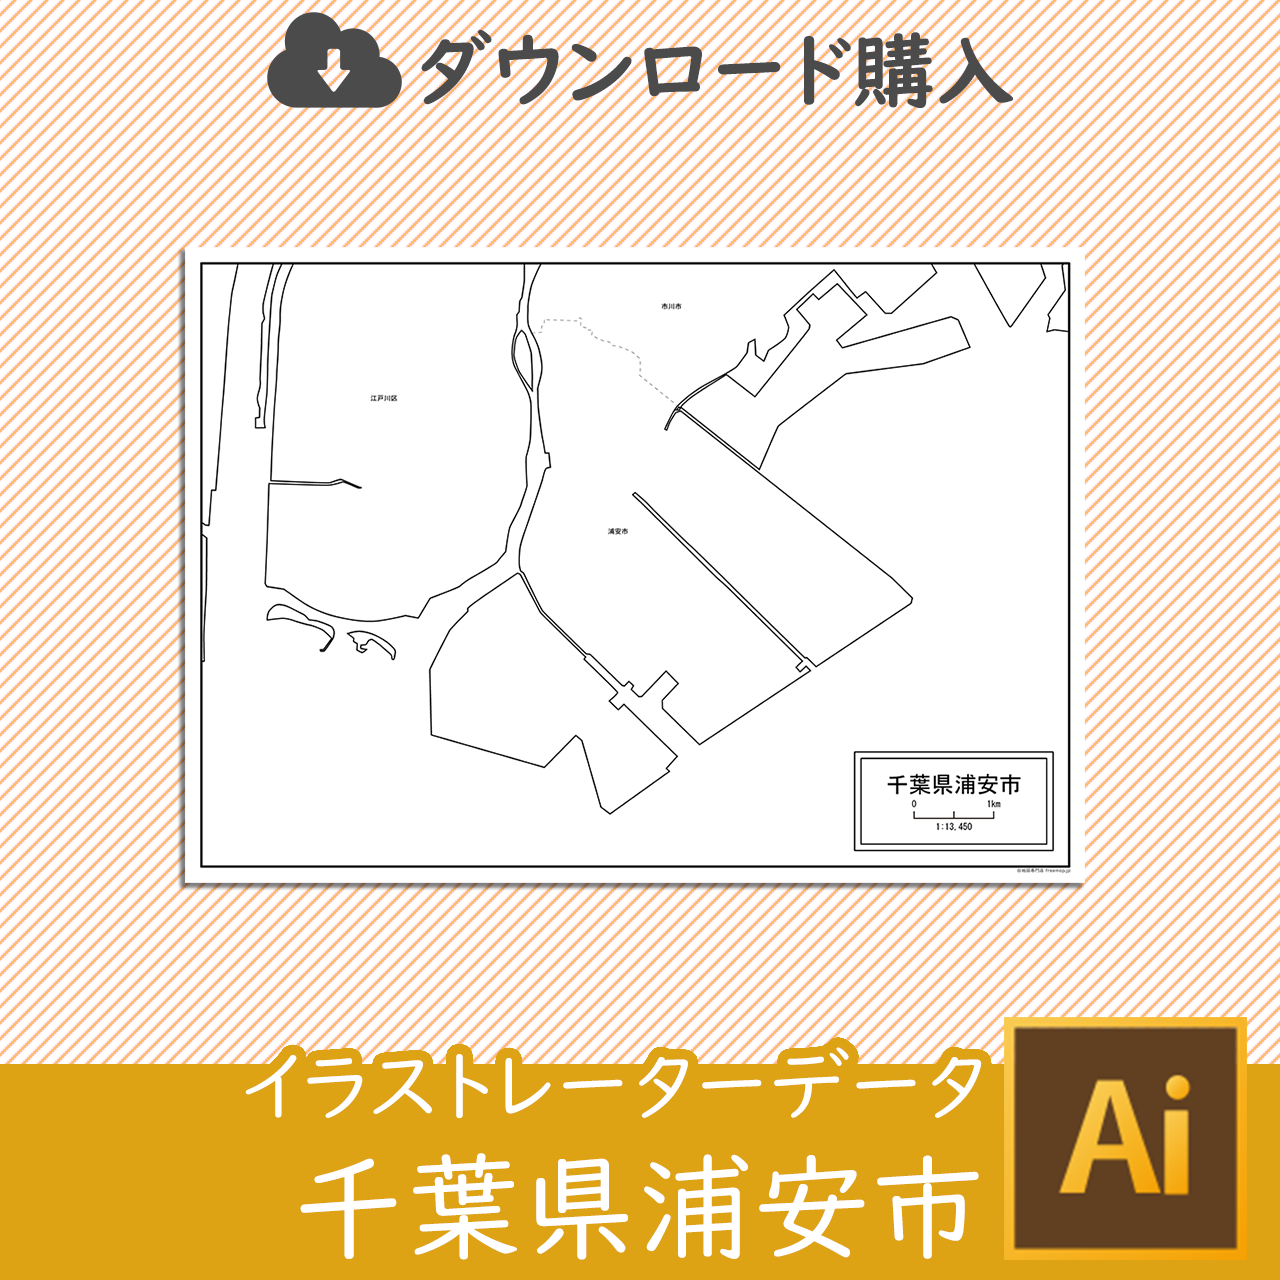 浦安市のaiデータのサムネイル画像